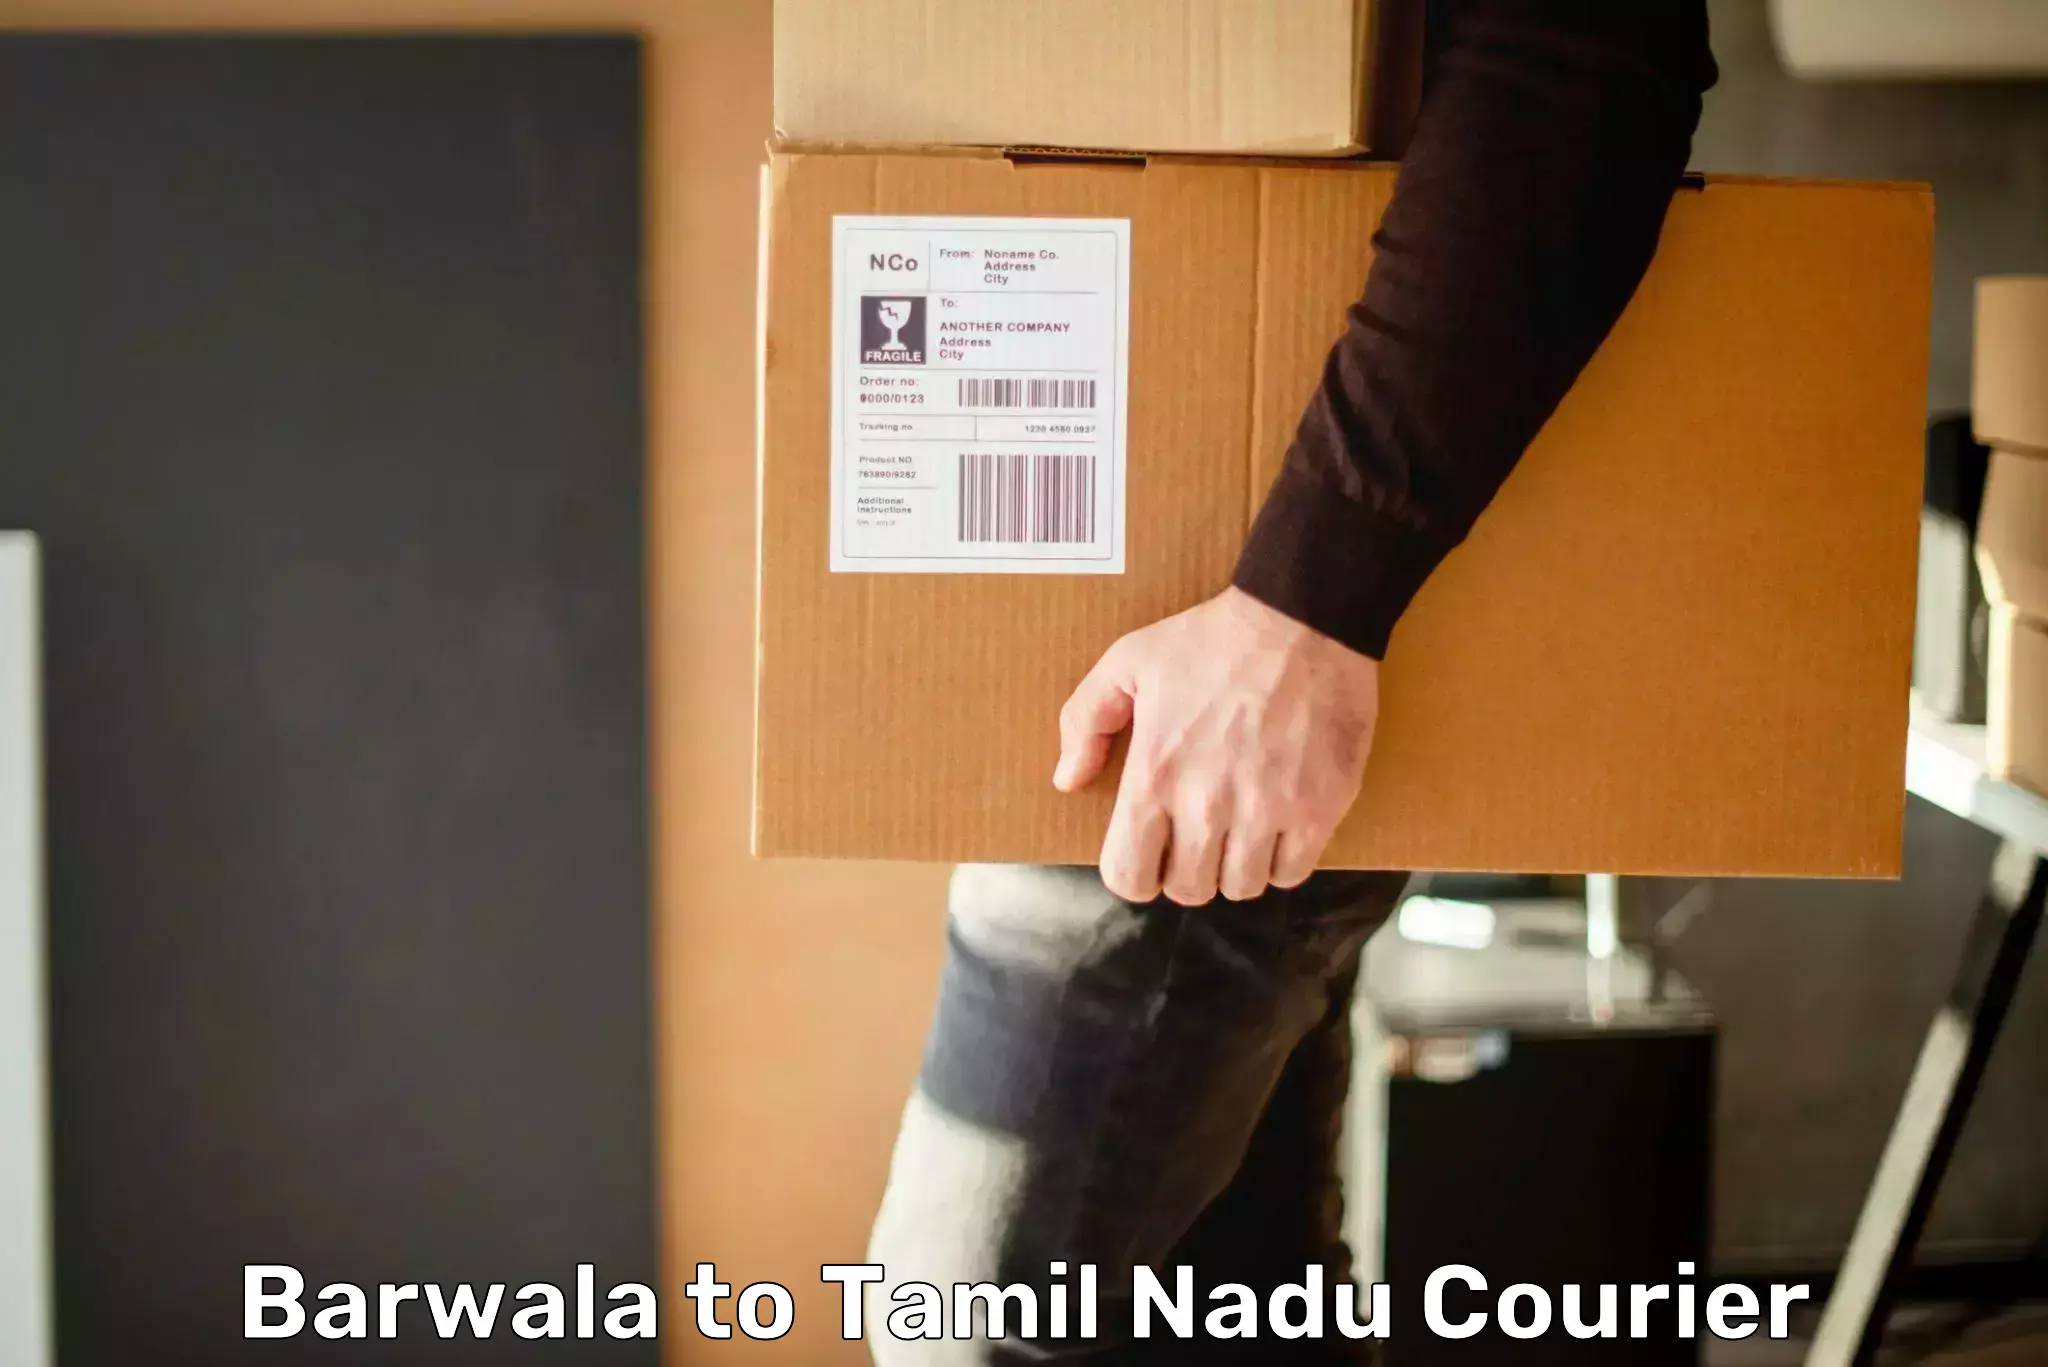 Shipping and handling Barwala to Gudiyattam